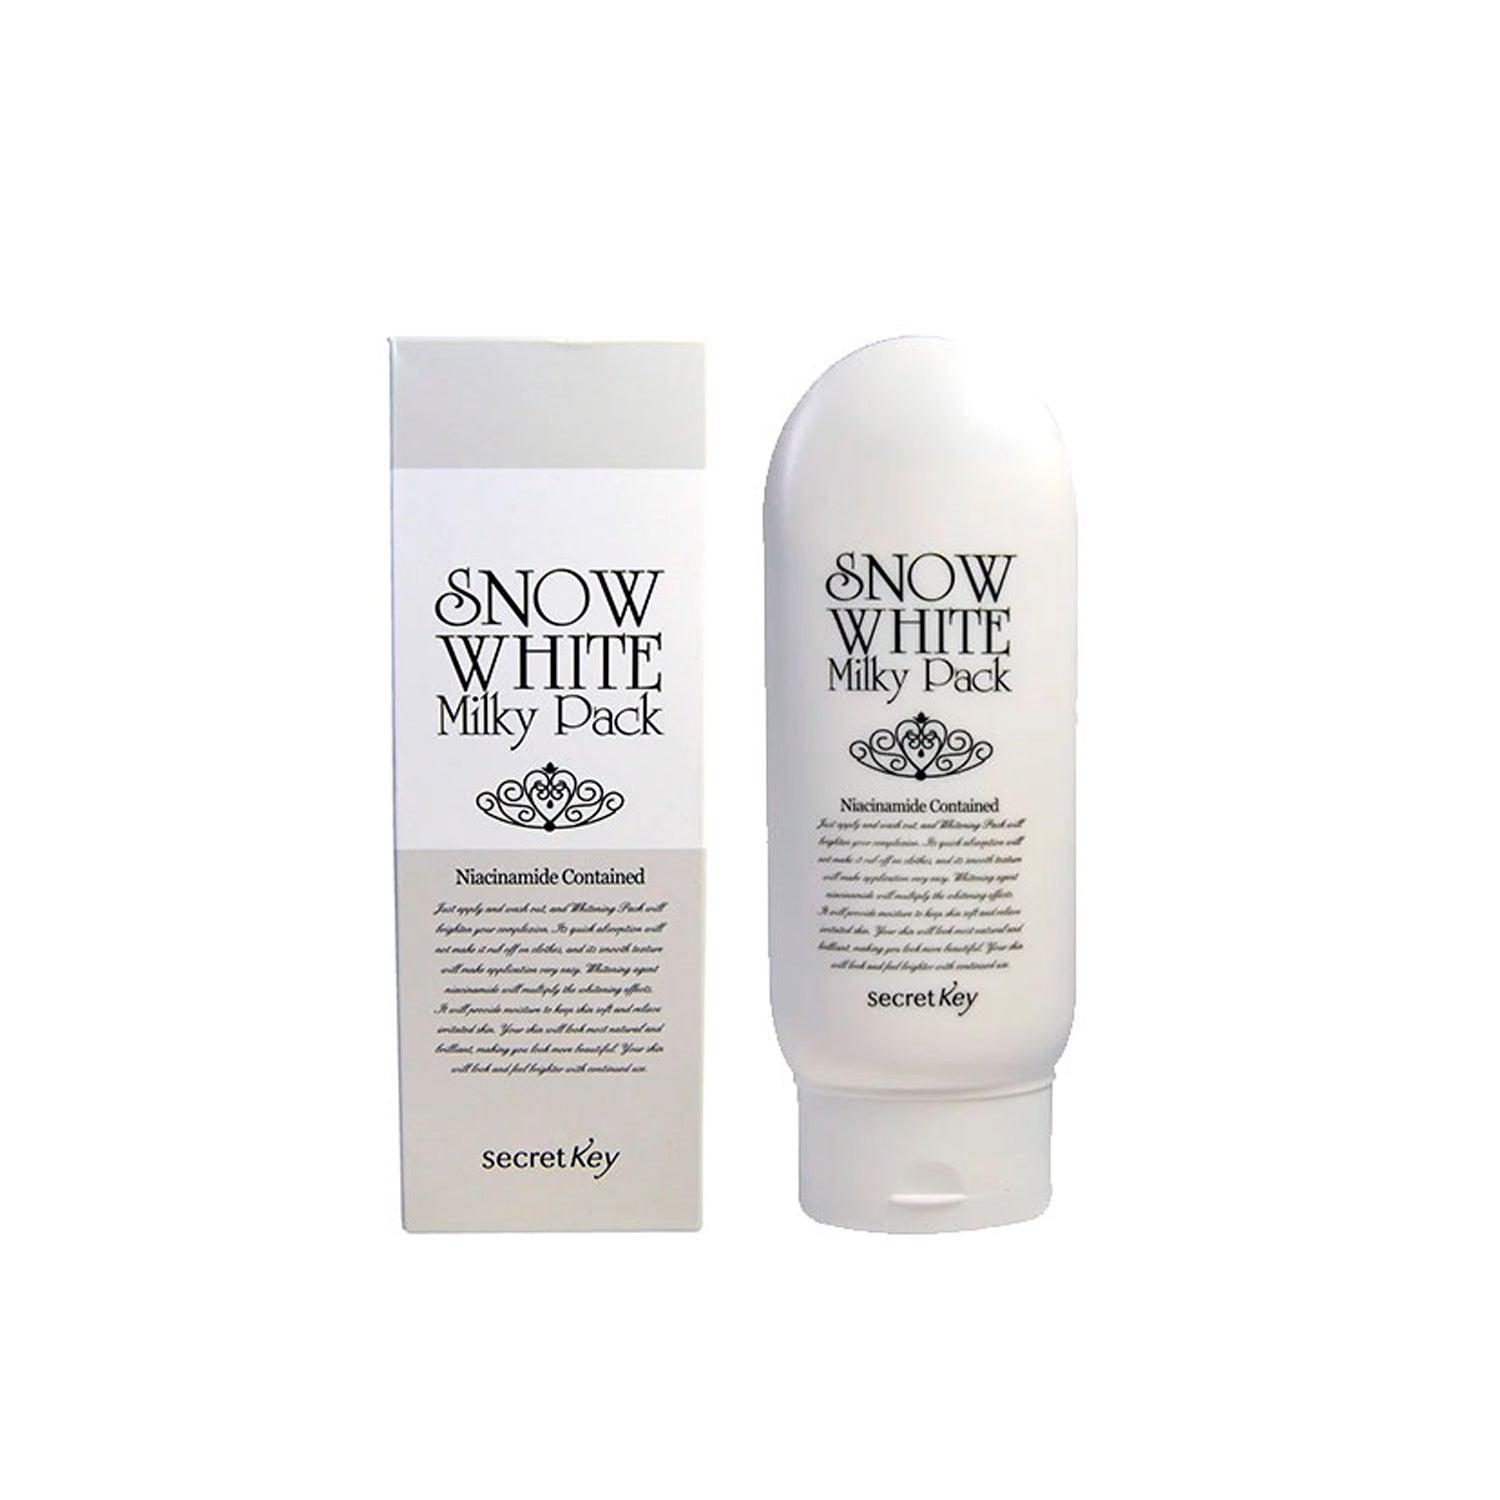 Snow White Milky Pack 200gr